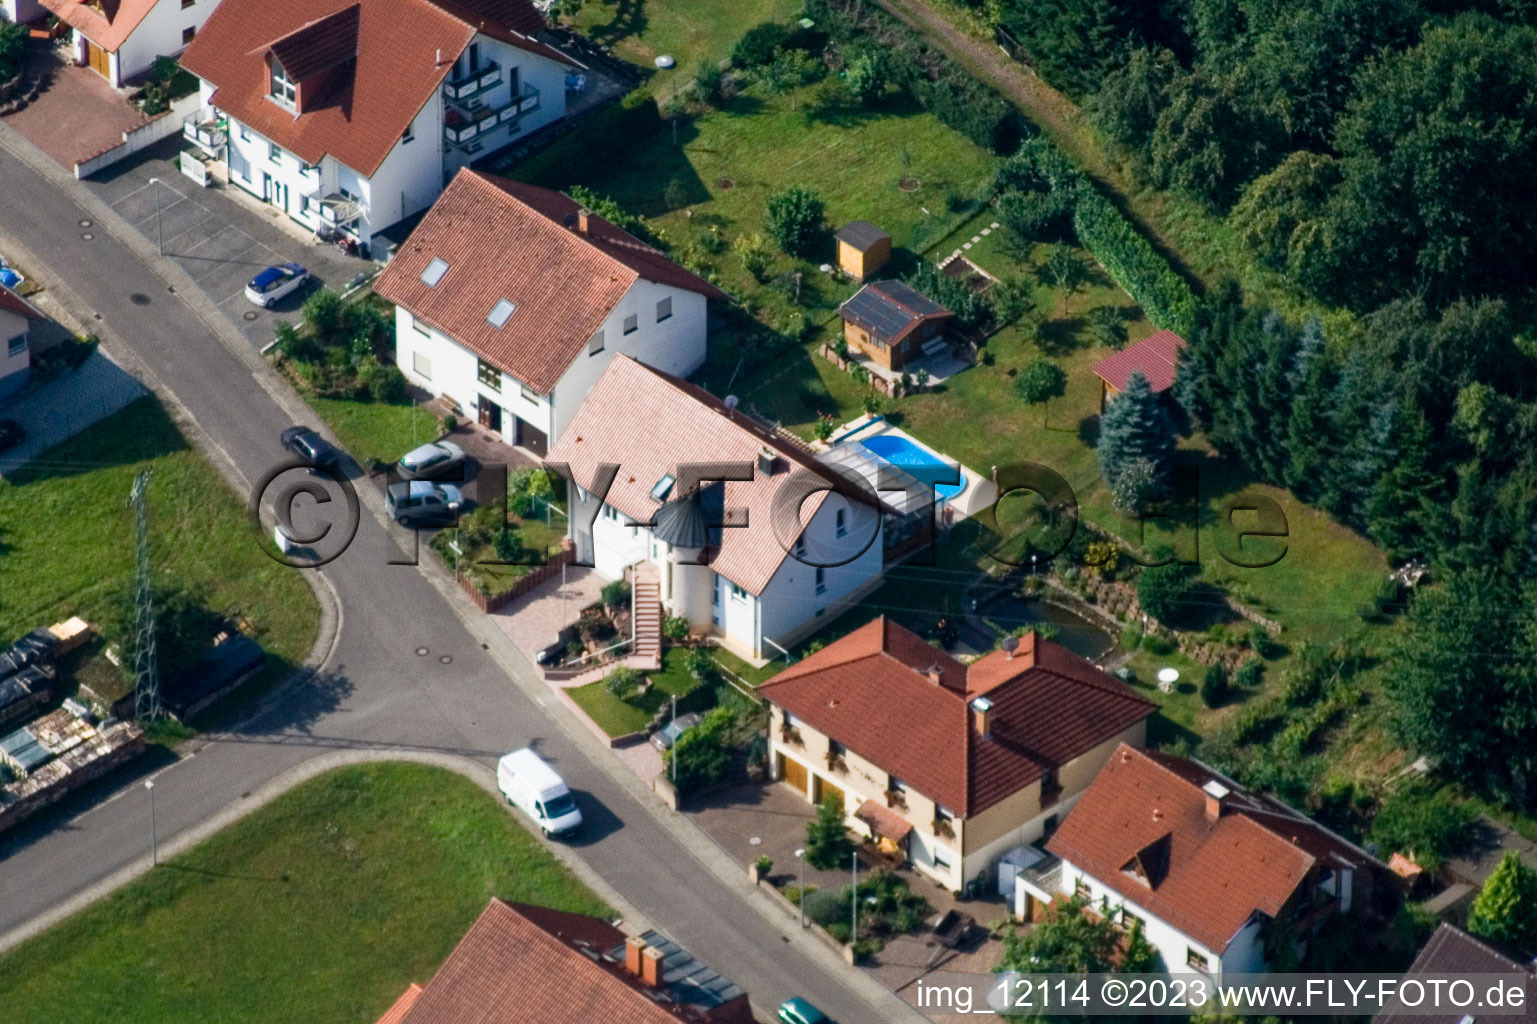 Eußerthal im Bundesland Rheinland-Pfalz, Deutschland von der Drohne aus gesehen